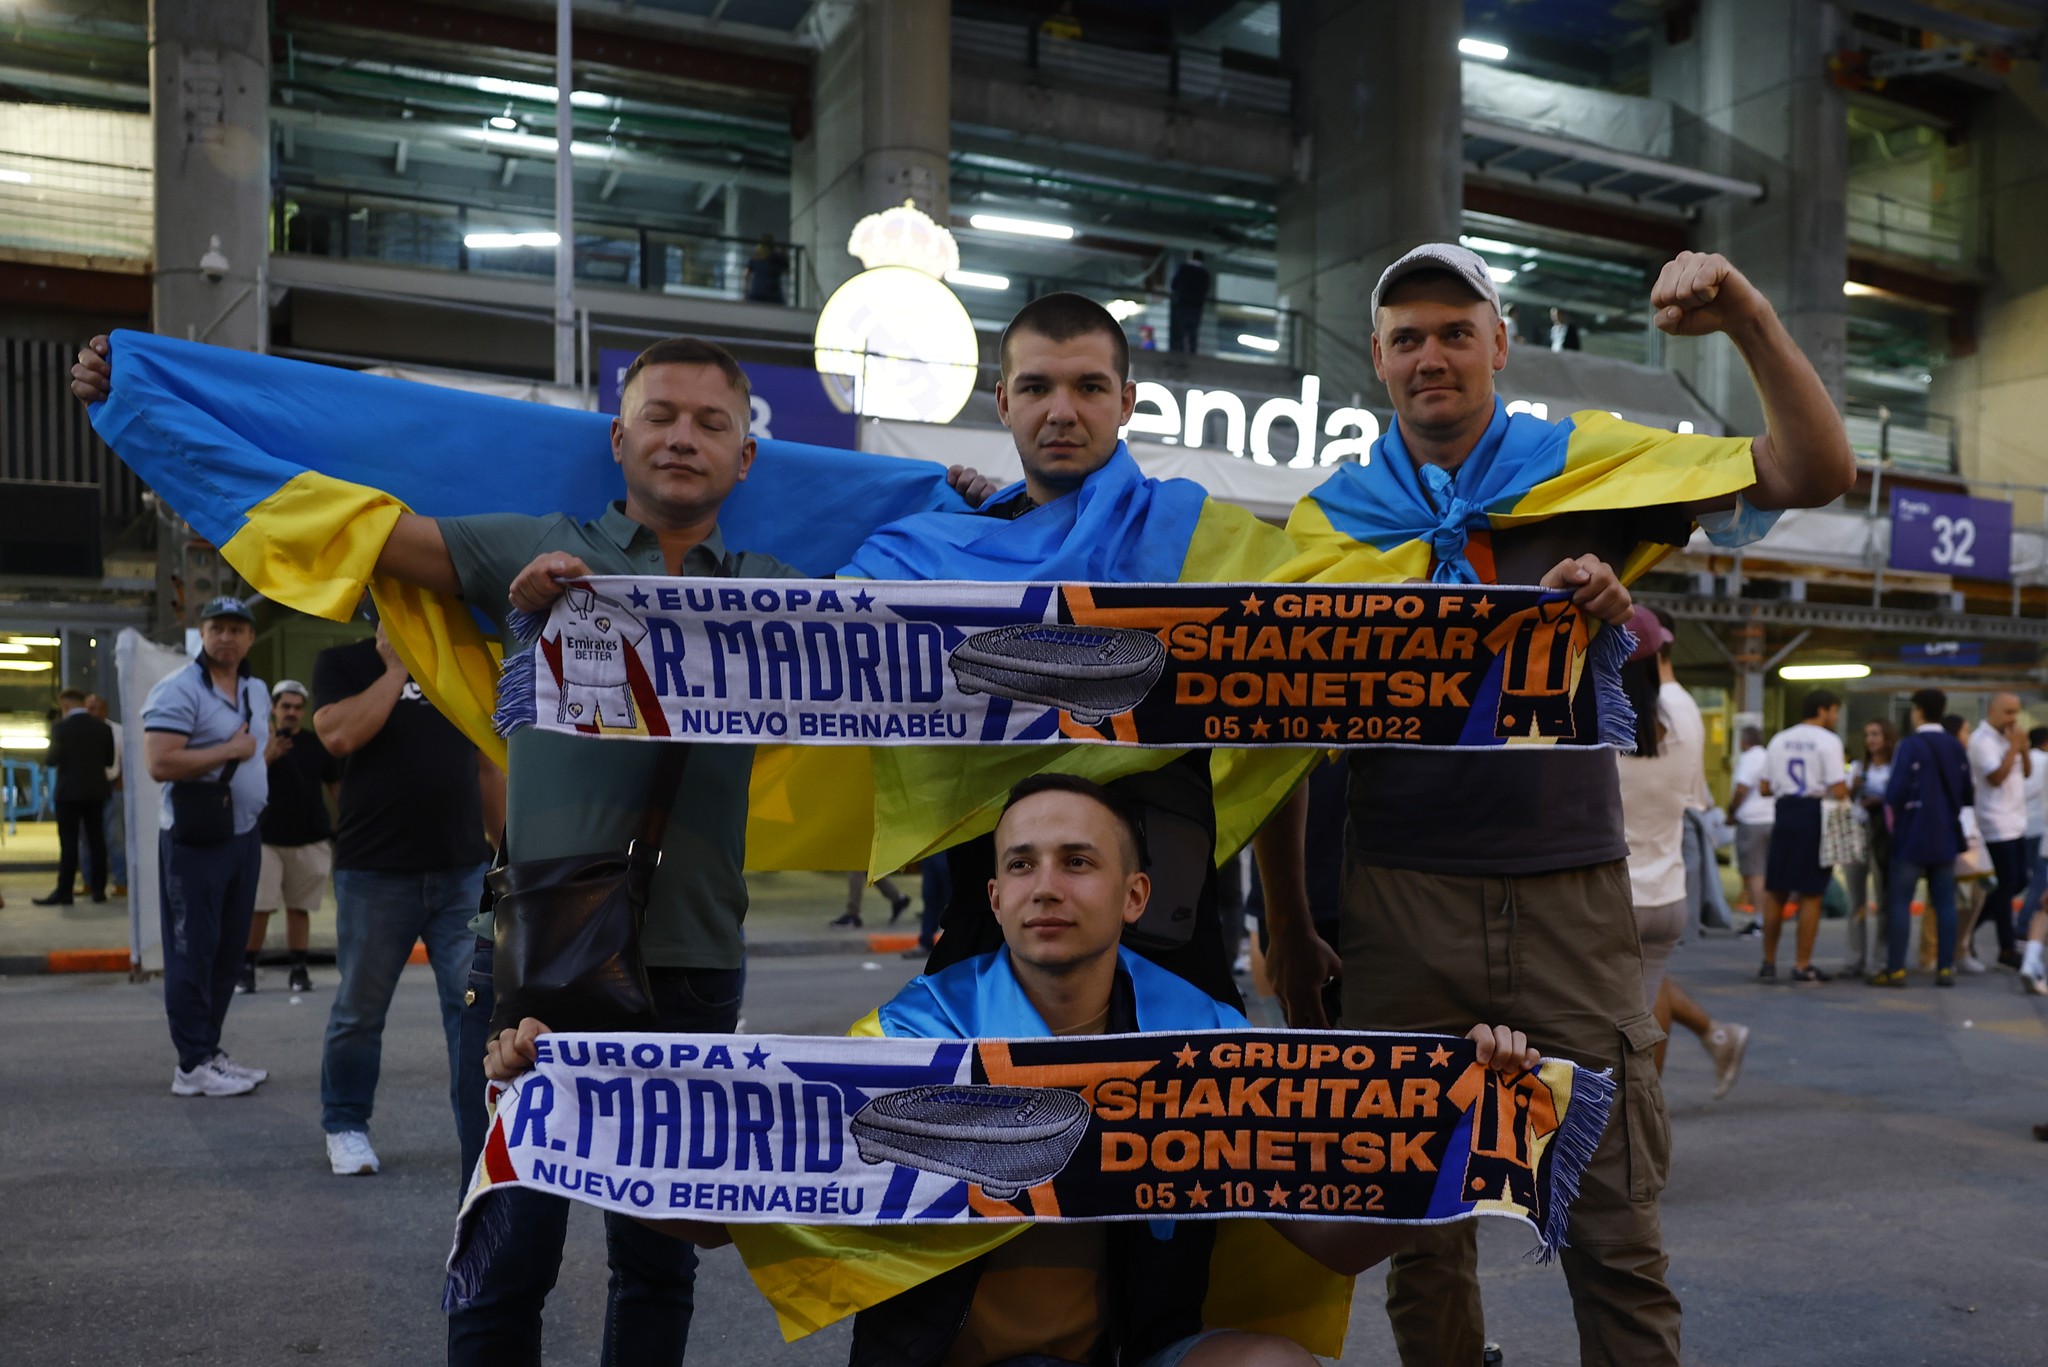 Shakhtar Donetsk fans at the Santiago Bernabeu 